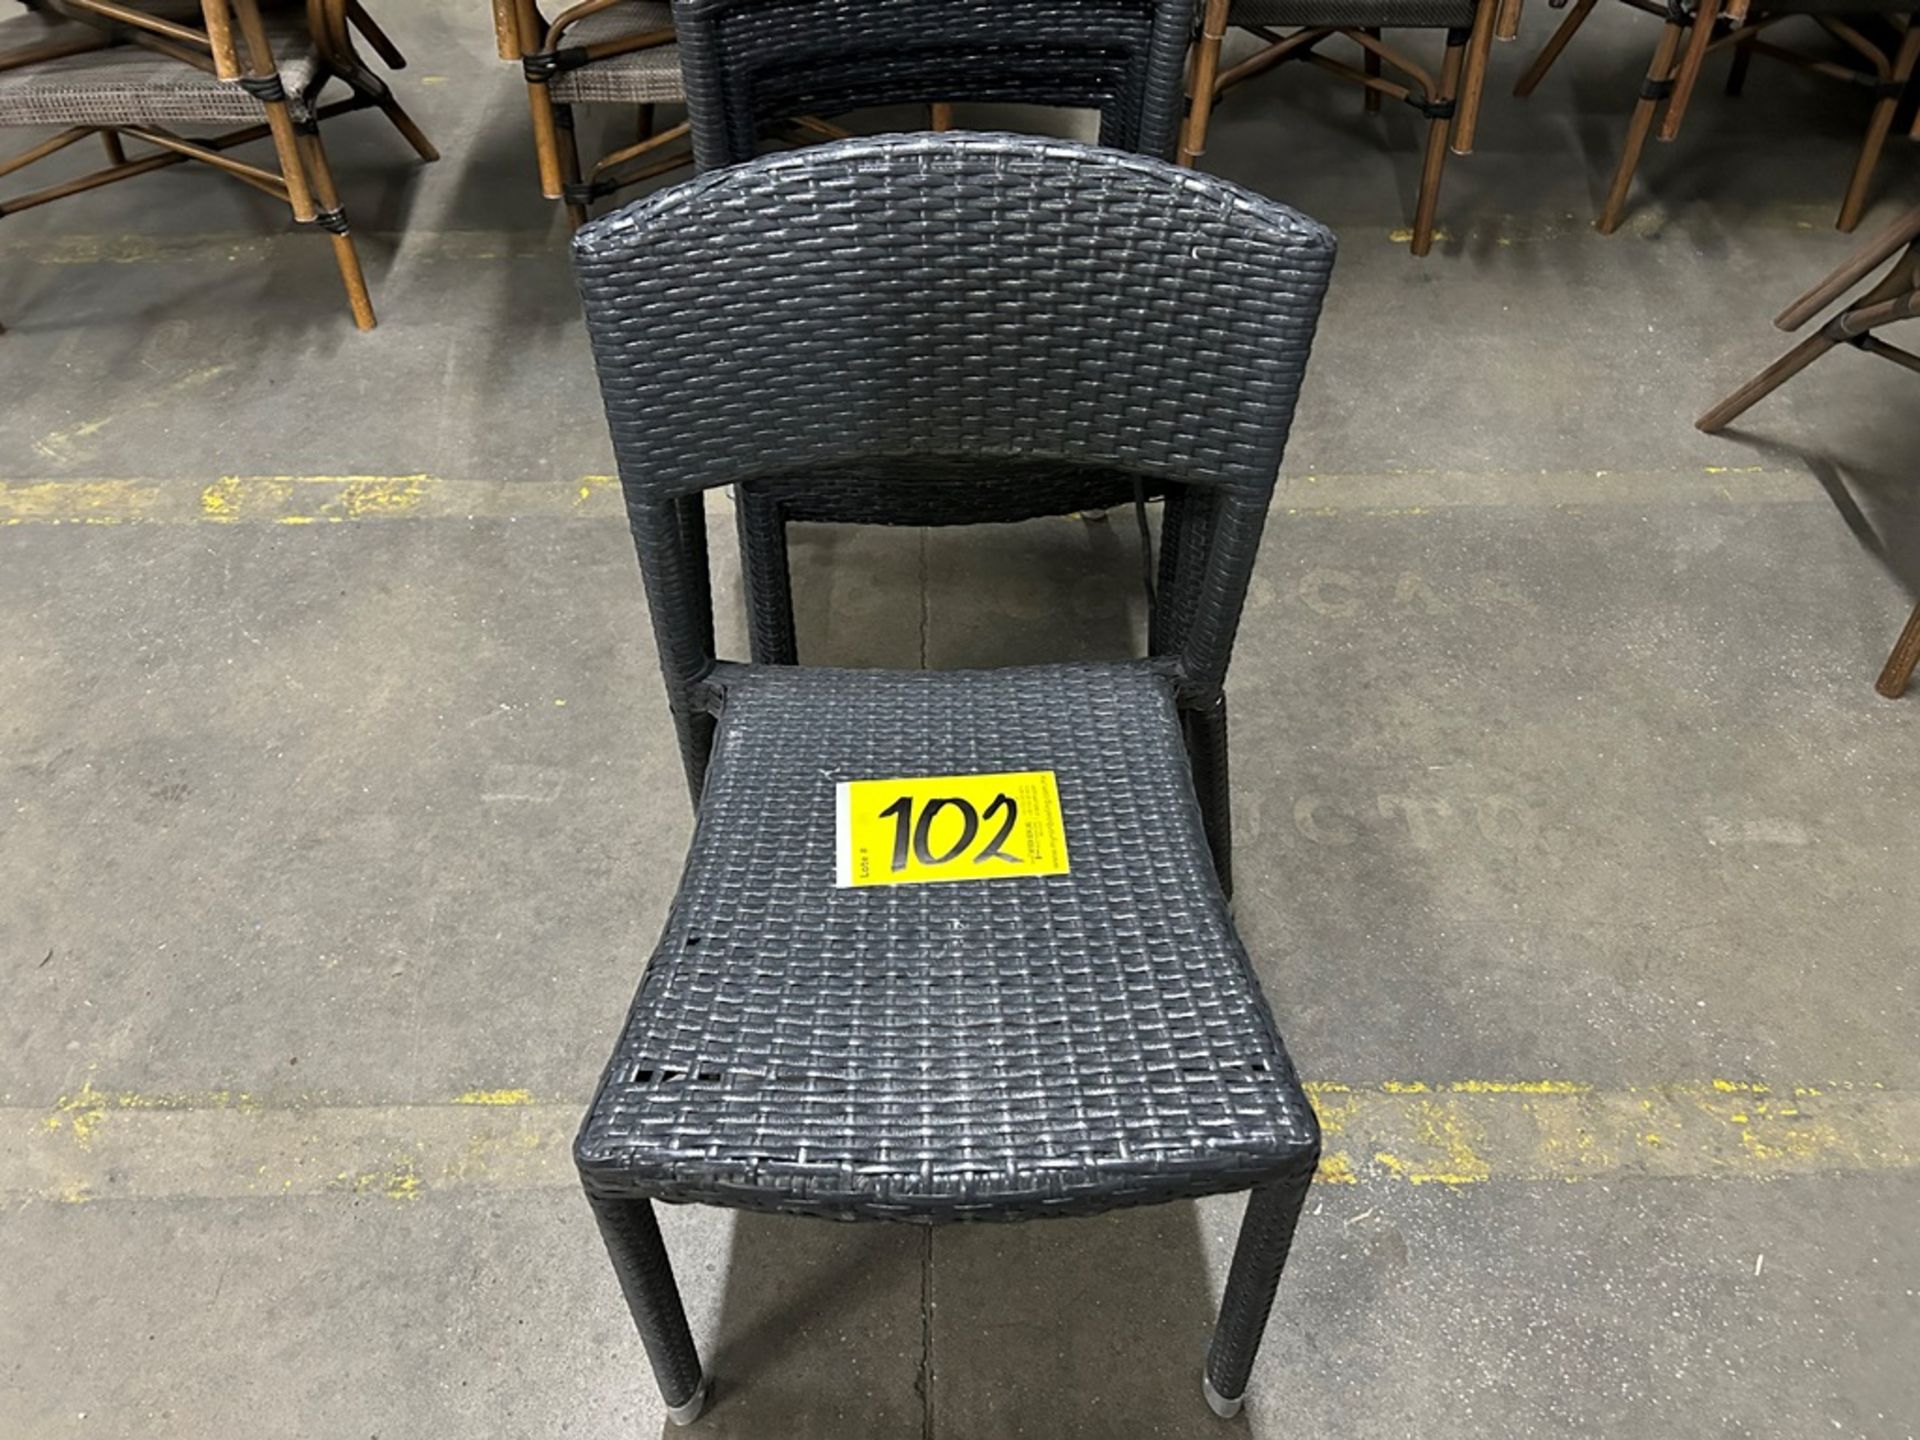 5 sillas de tipo ratán, color negro (Equipo usado) - Image 4 of 5